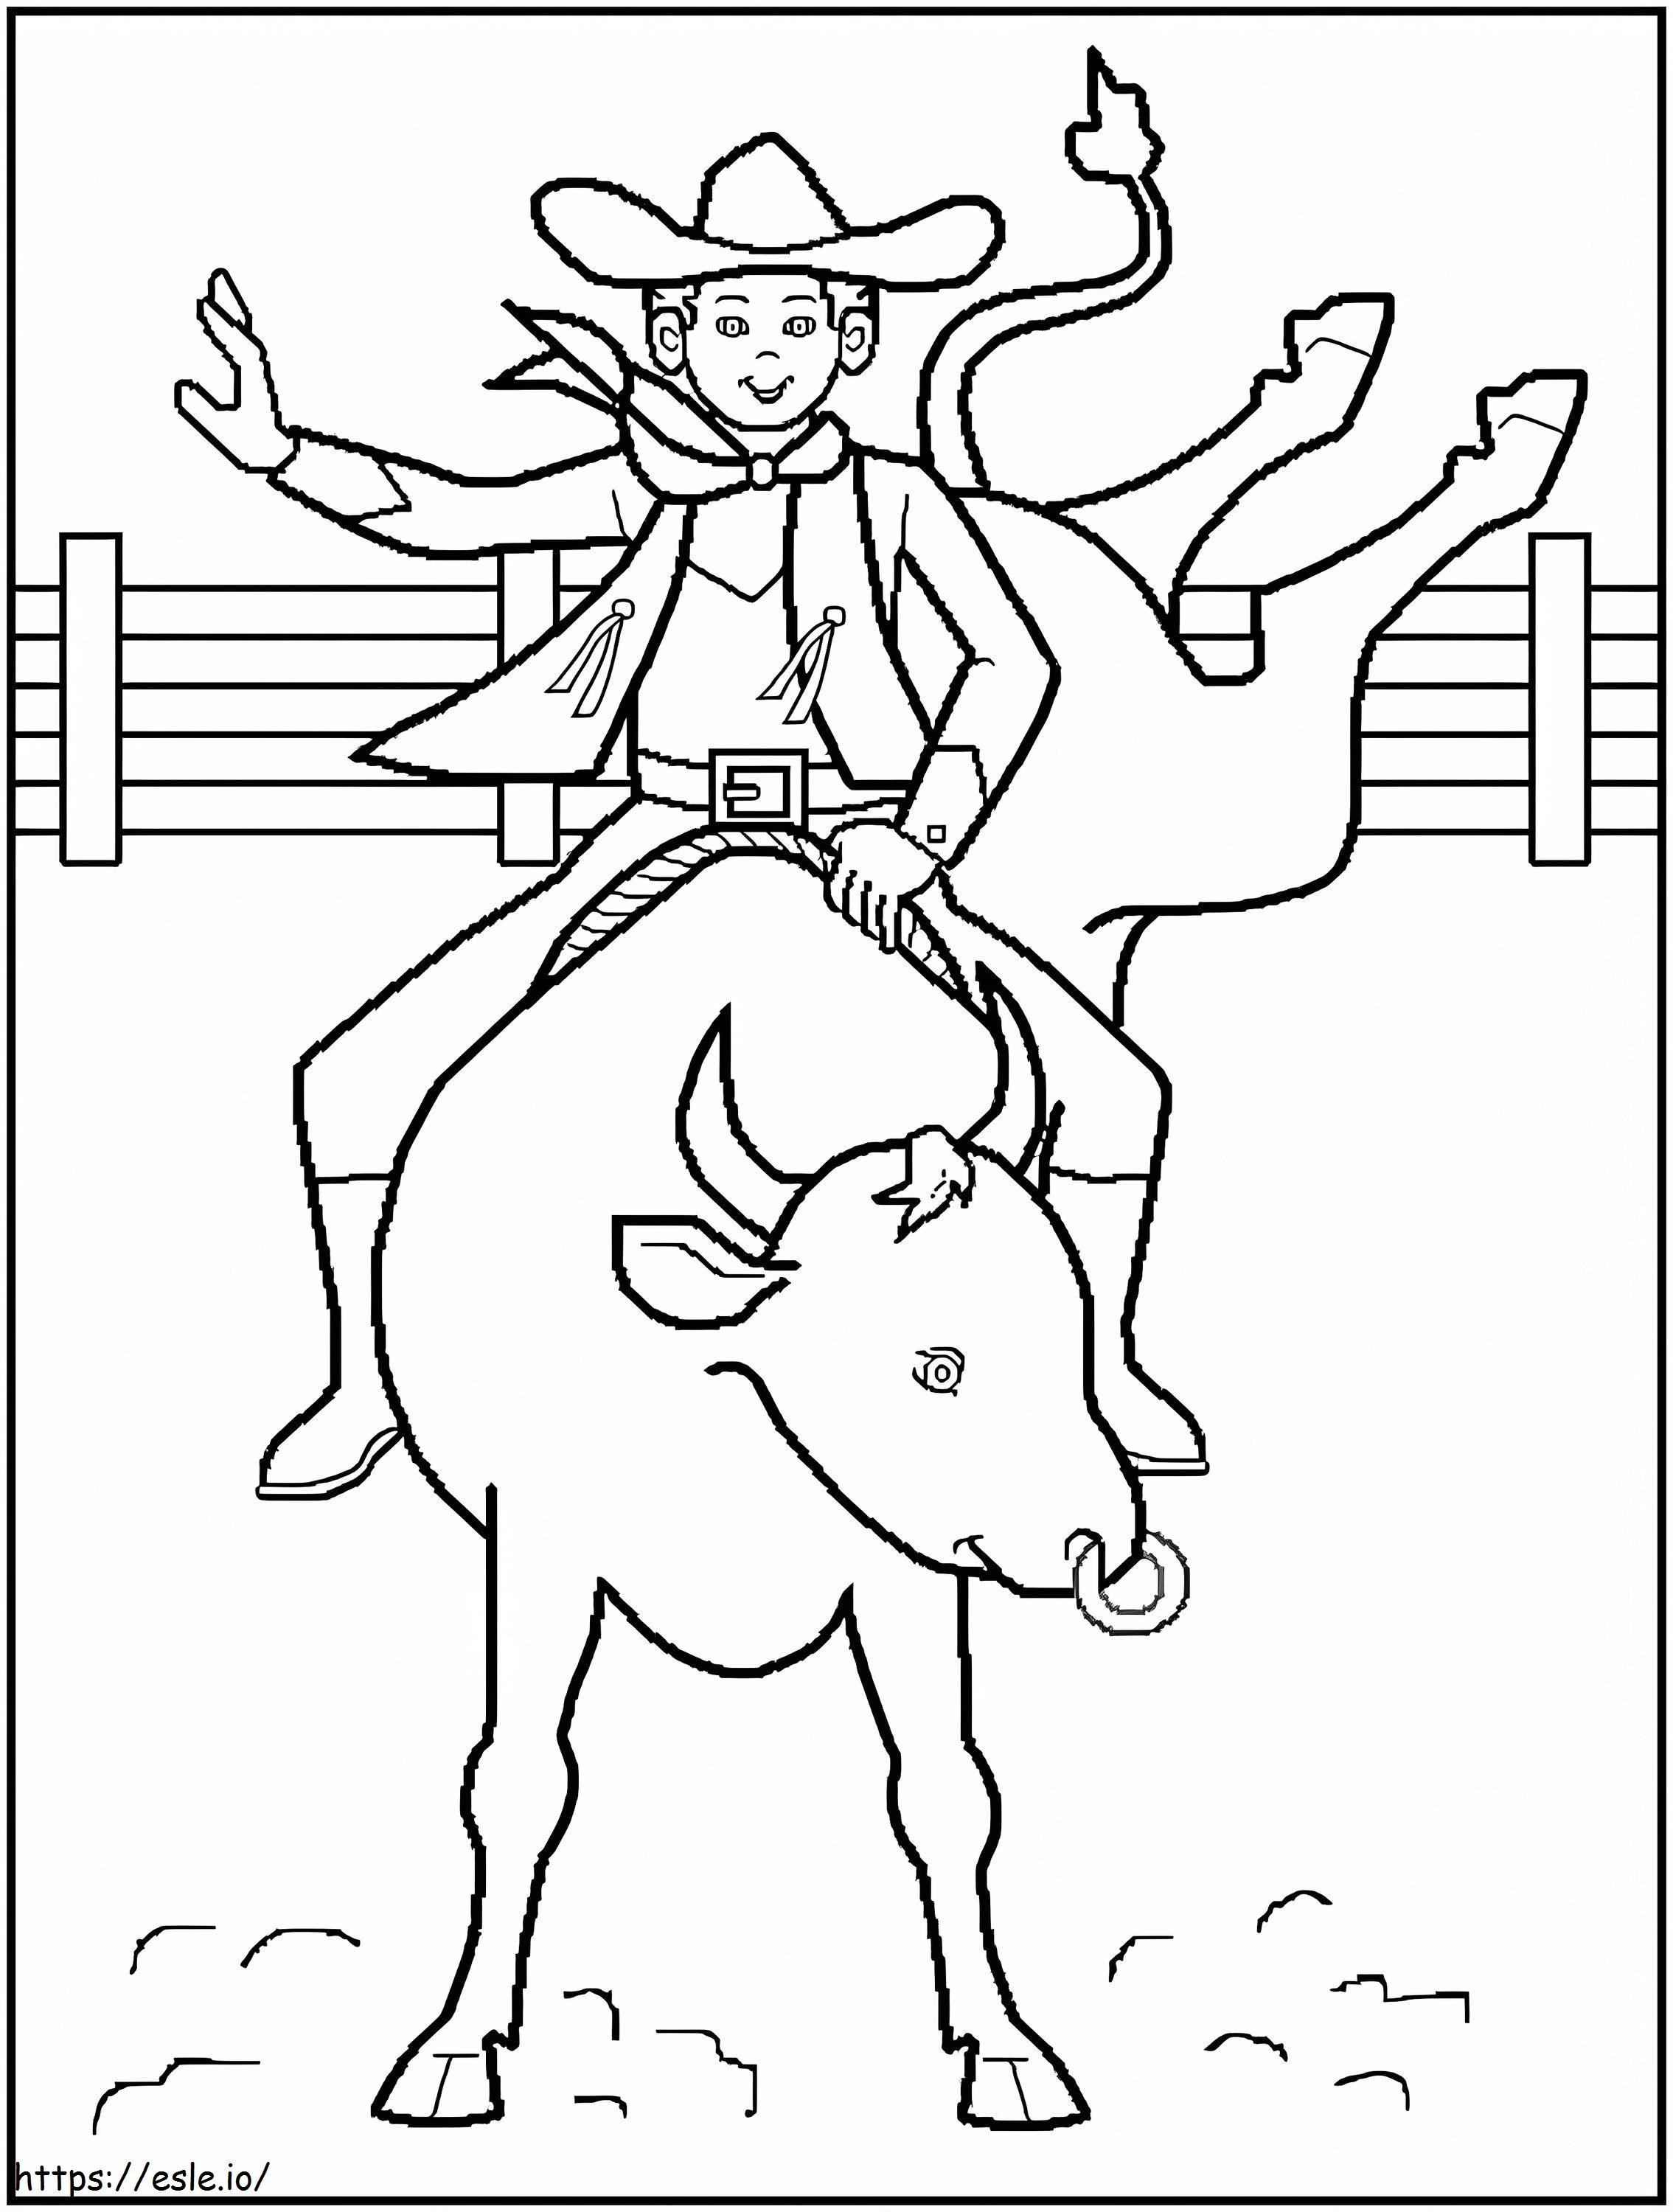 Cowboy sorridente andando a cavalo para colorir